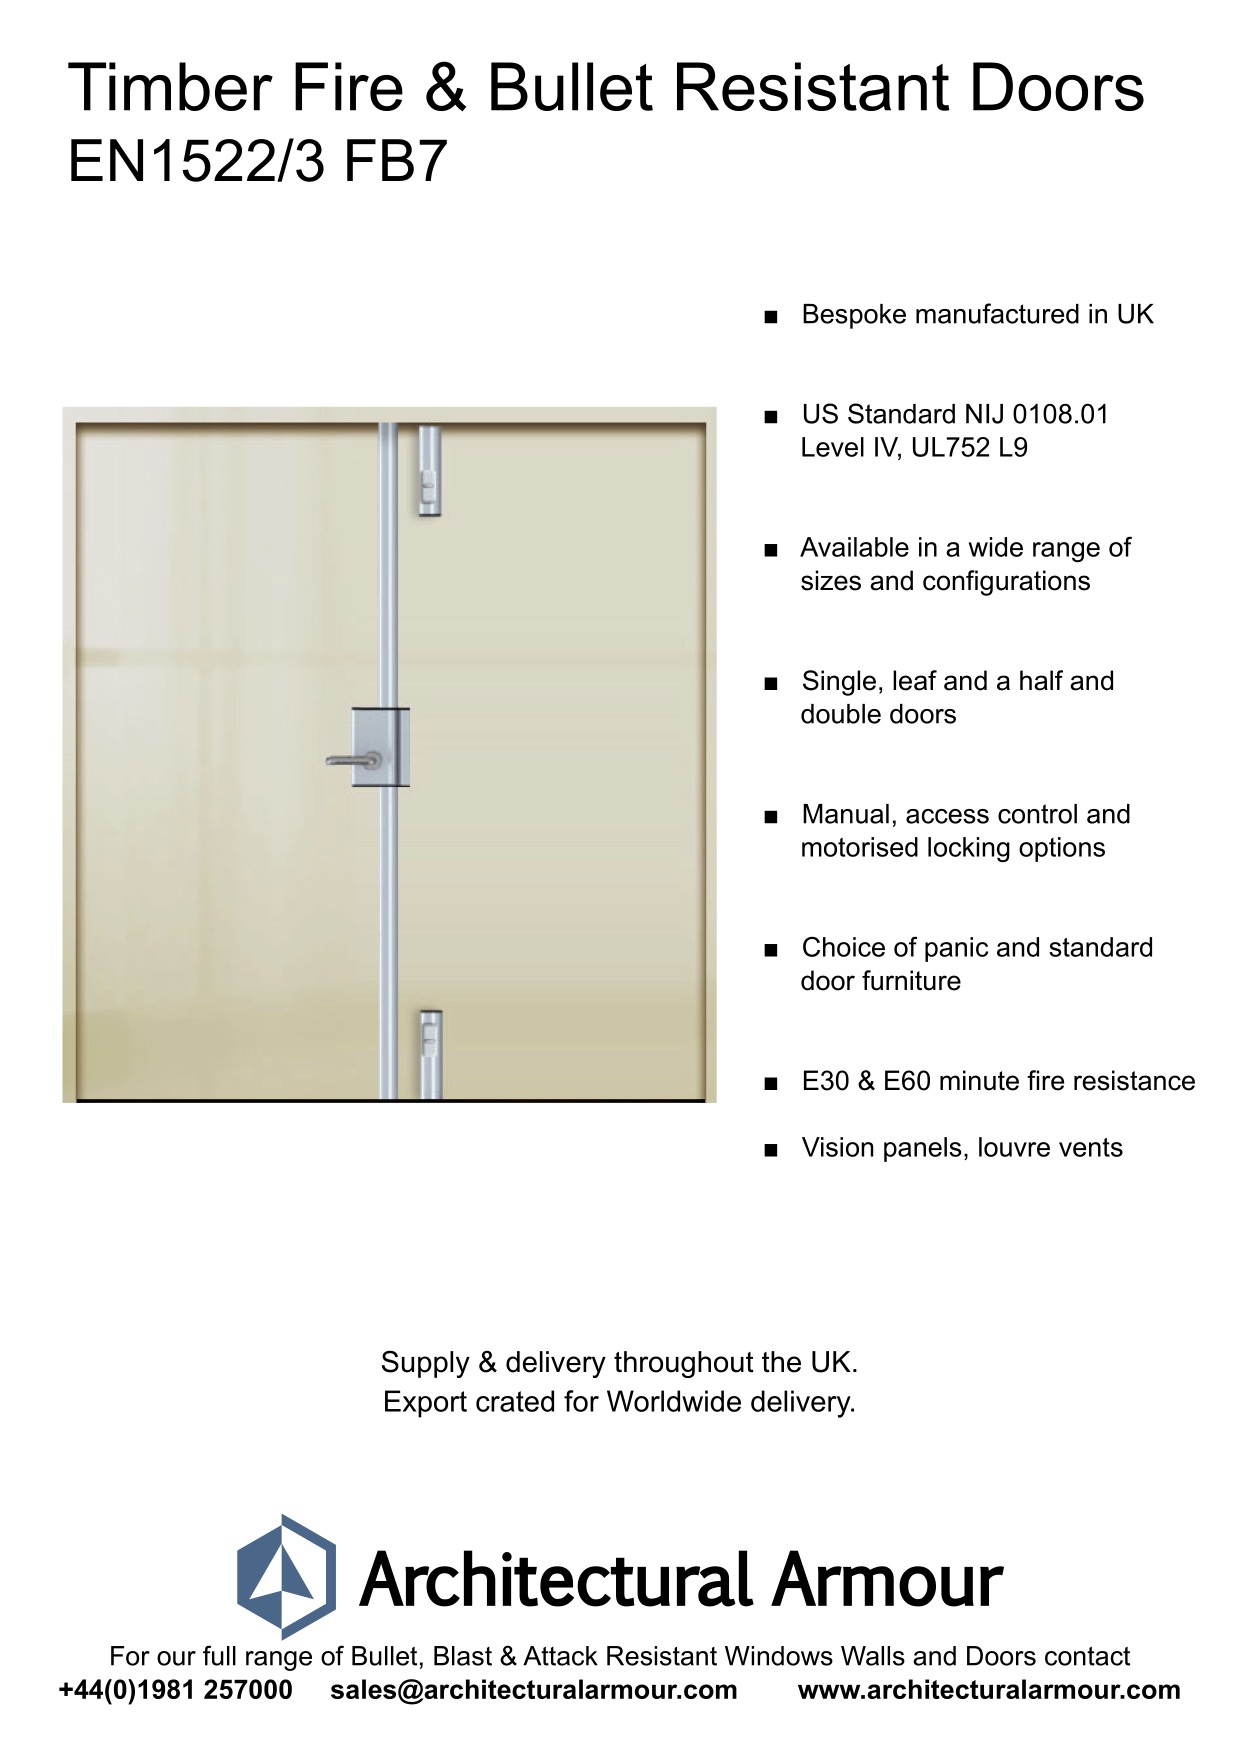 Fire-resistant-and-Bulletproof-Timber-Double-Doors-UK-EN1522-3-FB7